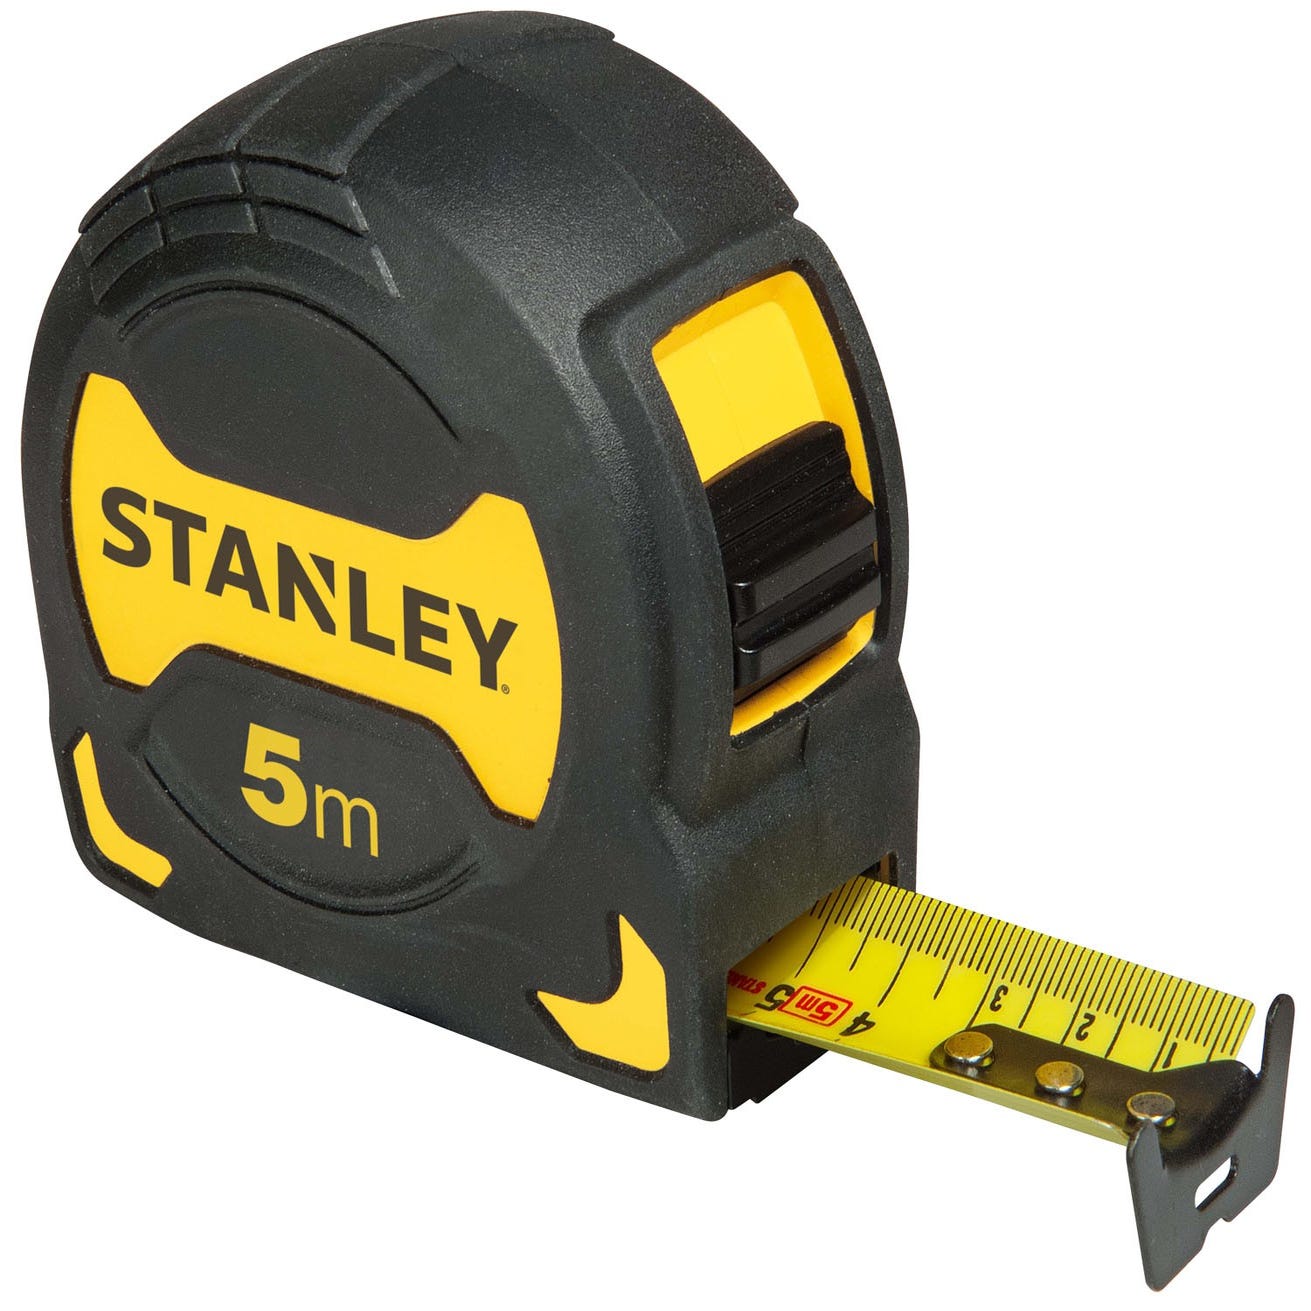 STANLEY STHT0-33561 - Flexómetro 5m x 28mm